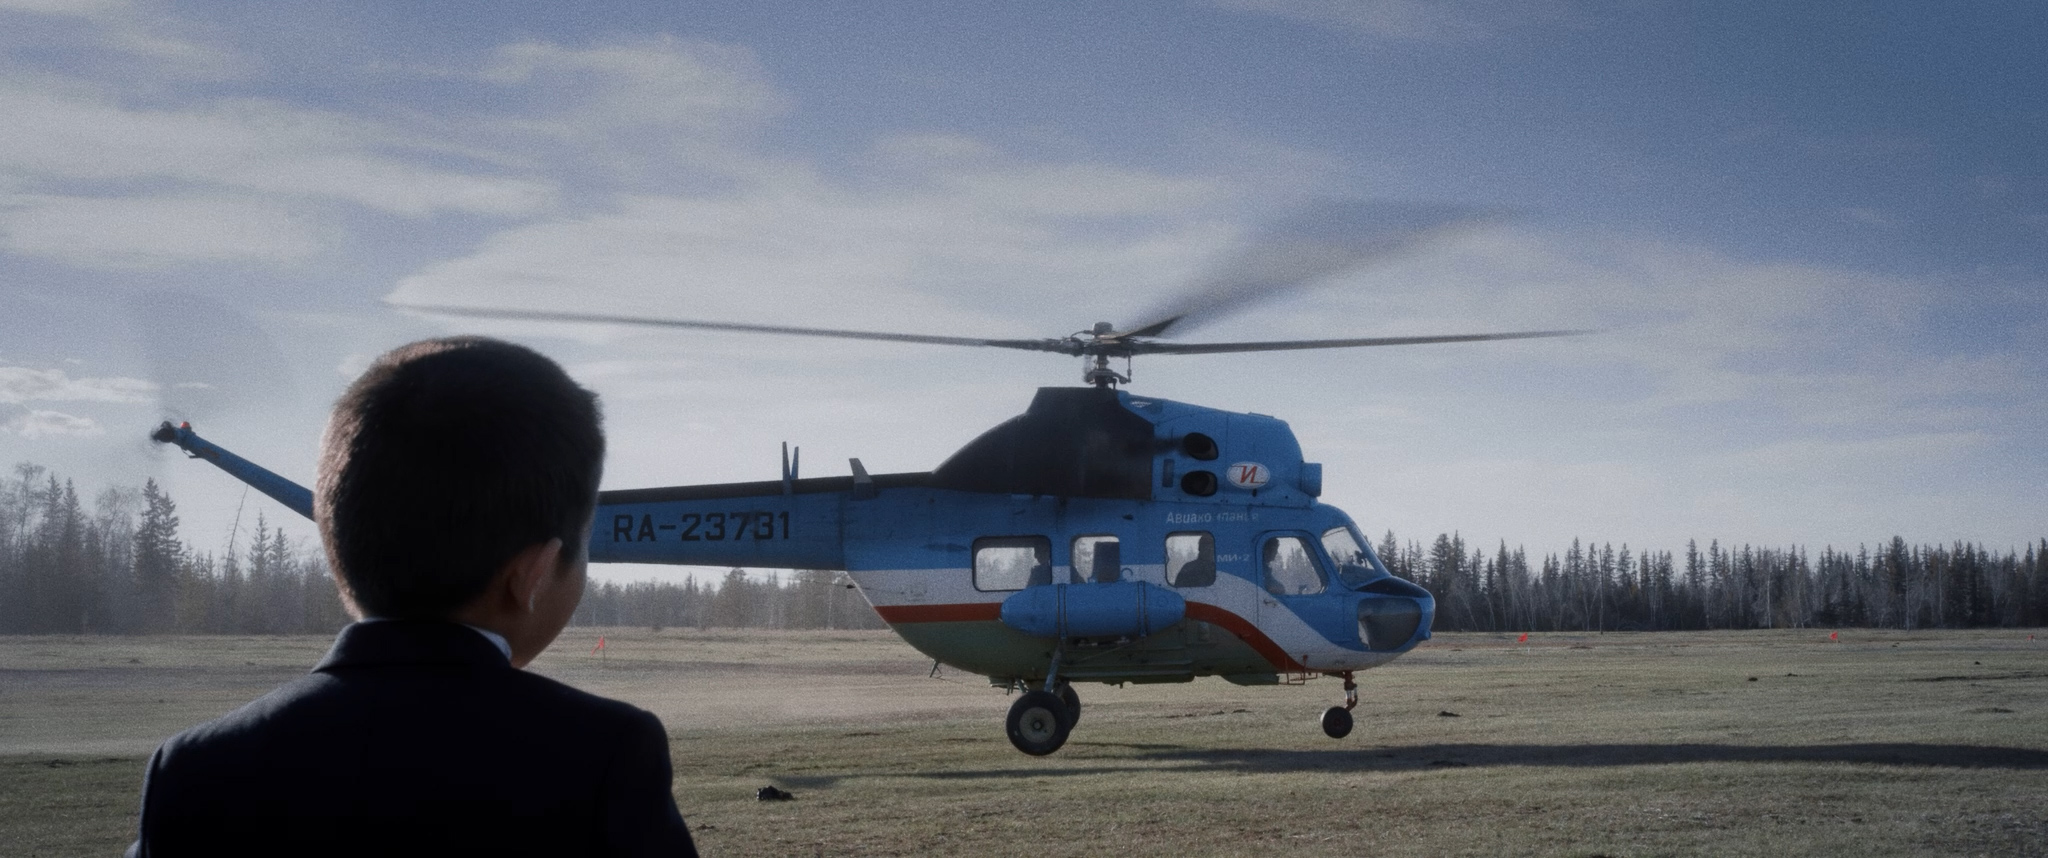 Прокат драмы «Вертолет» стартовал в Якутии